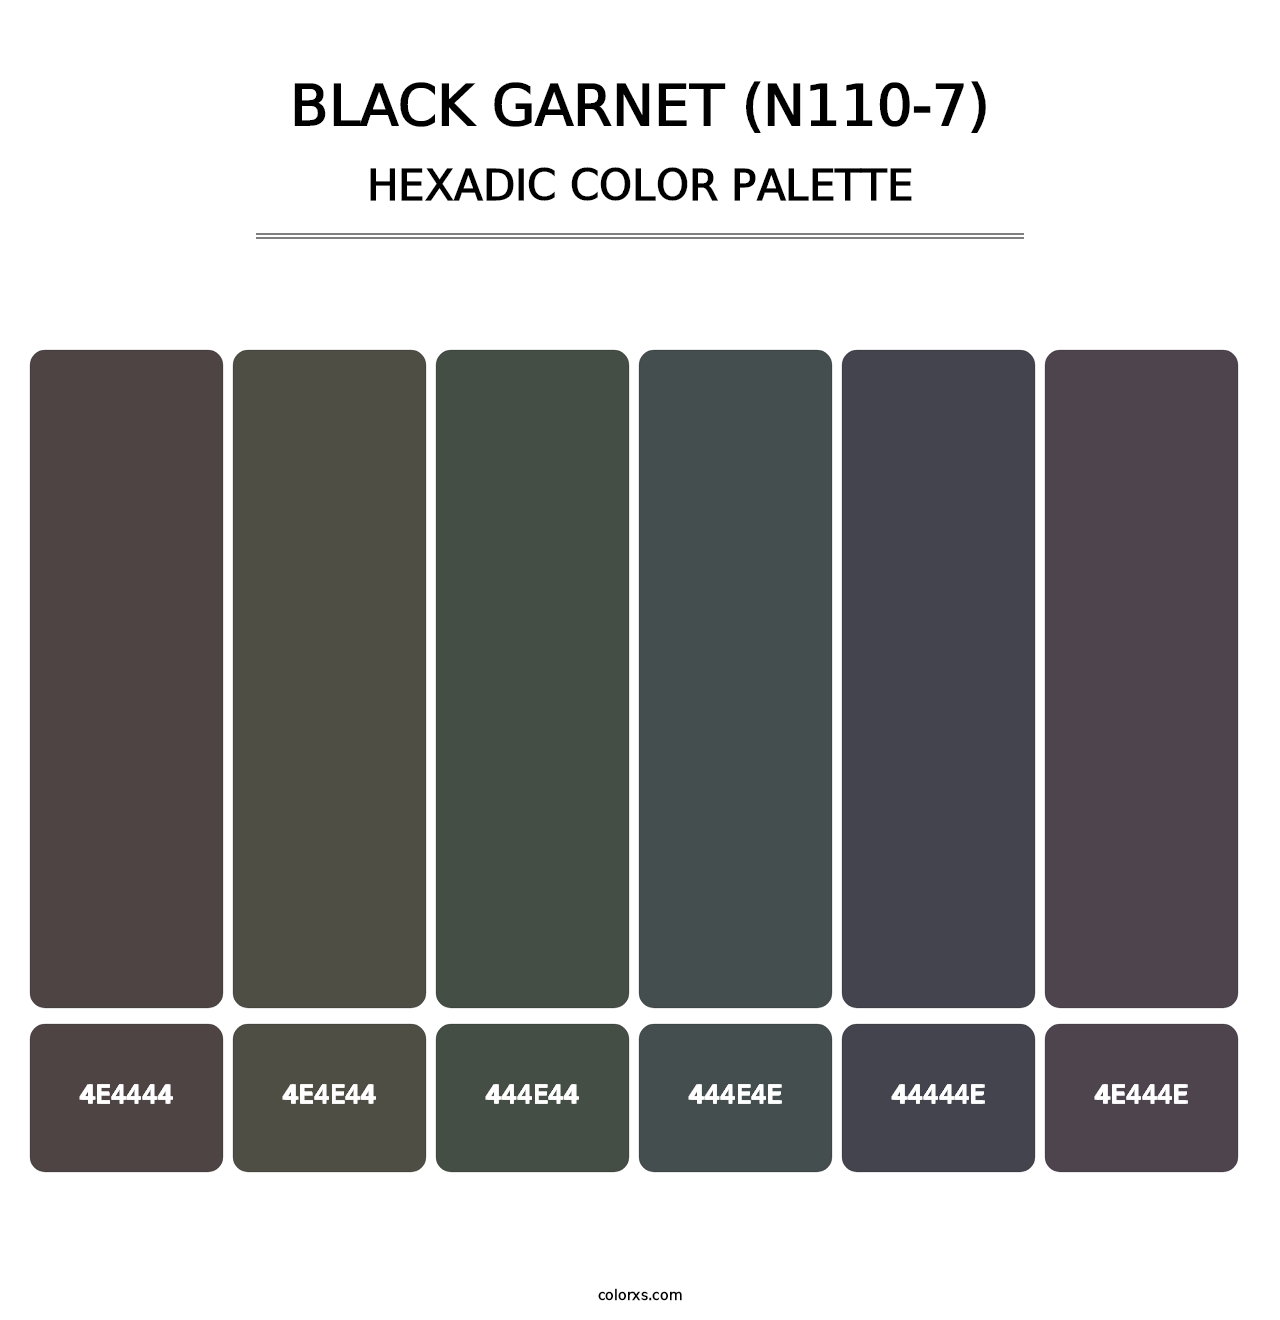 Black Garnet (N110-7) - Hexadic Color Palette